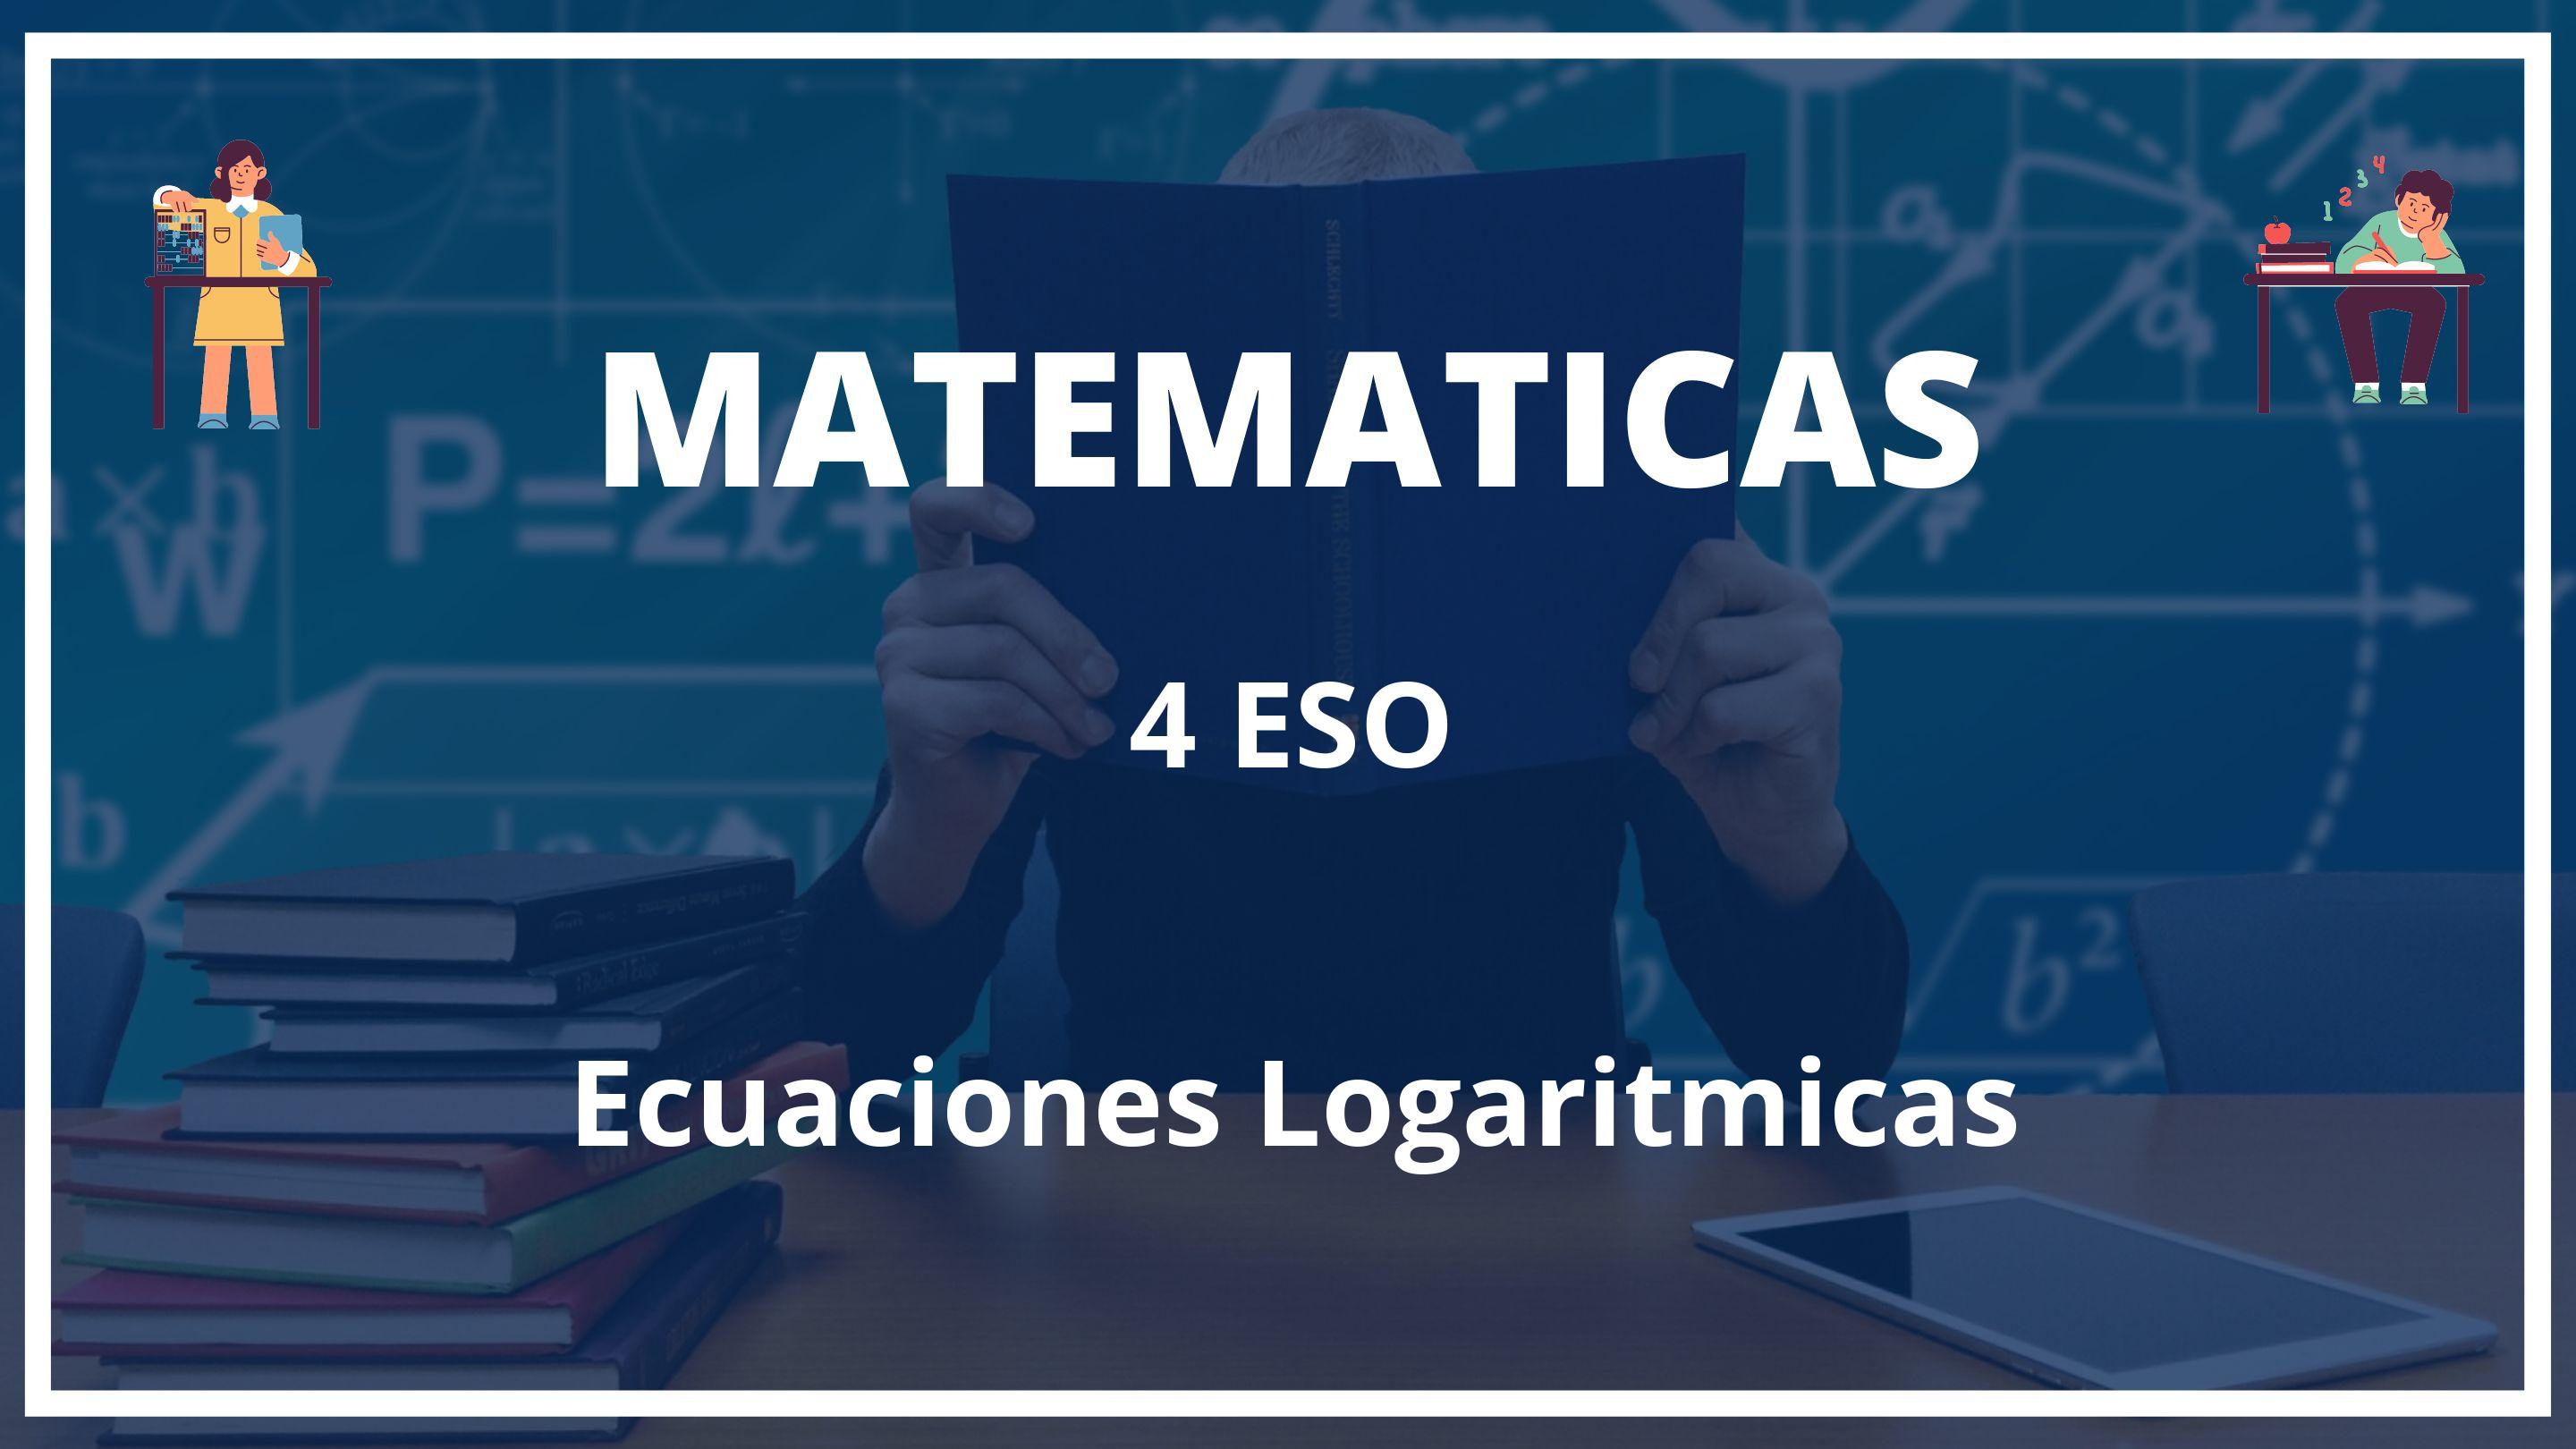 Ecuaciones Logaritmicas 4 ESO